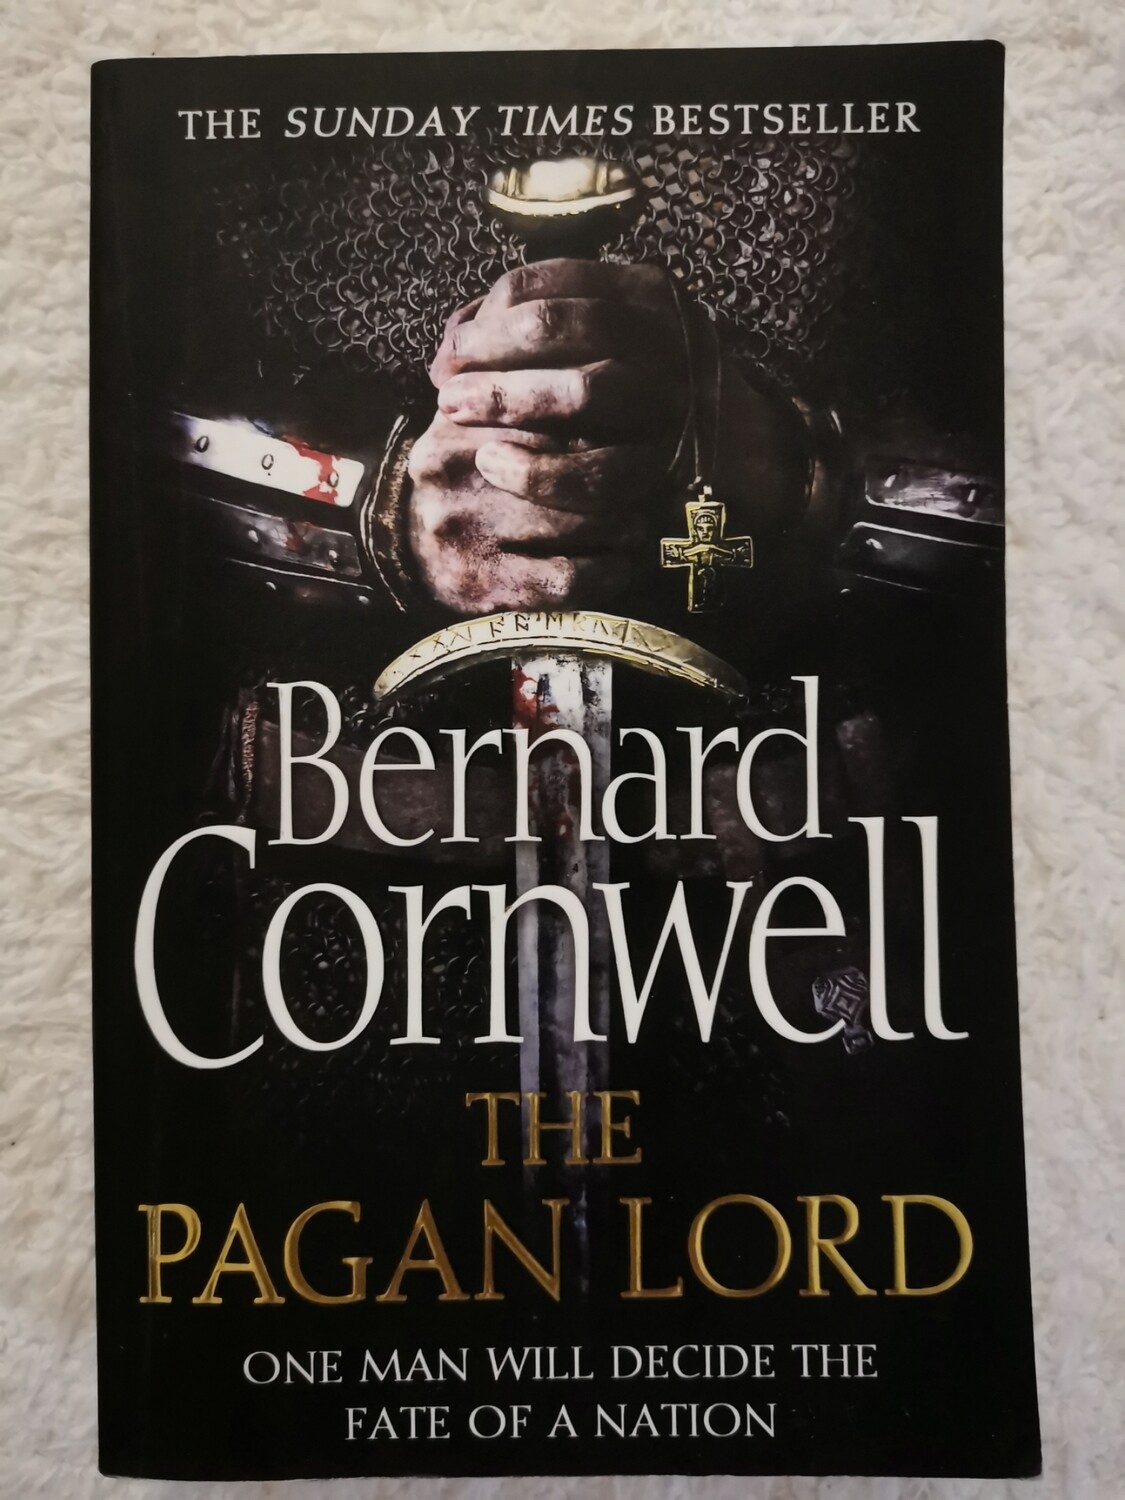 The pagan lord, Bernard Cornwell